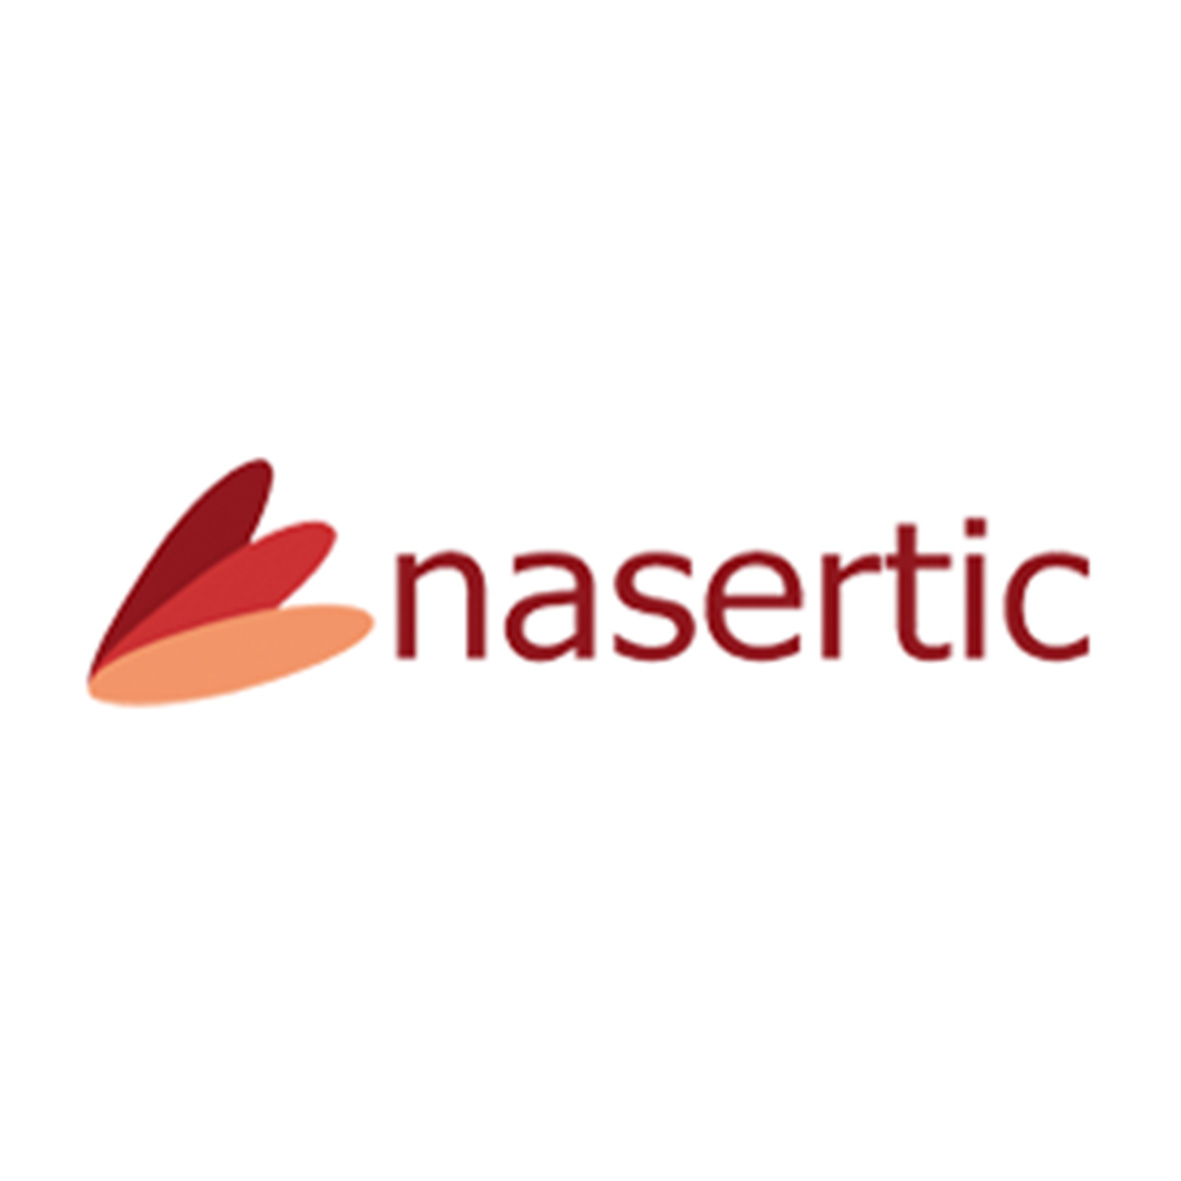 Colaboran: Nasertic - Semanas de la Ciencia Navarra